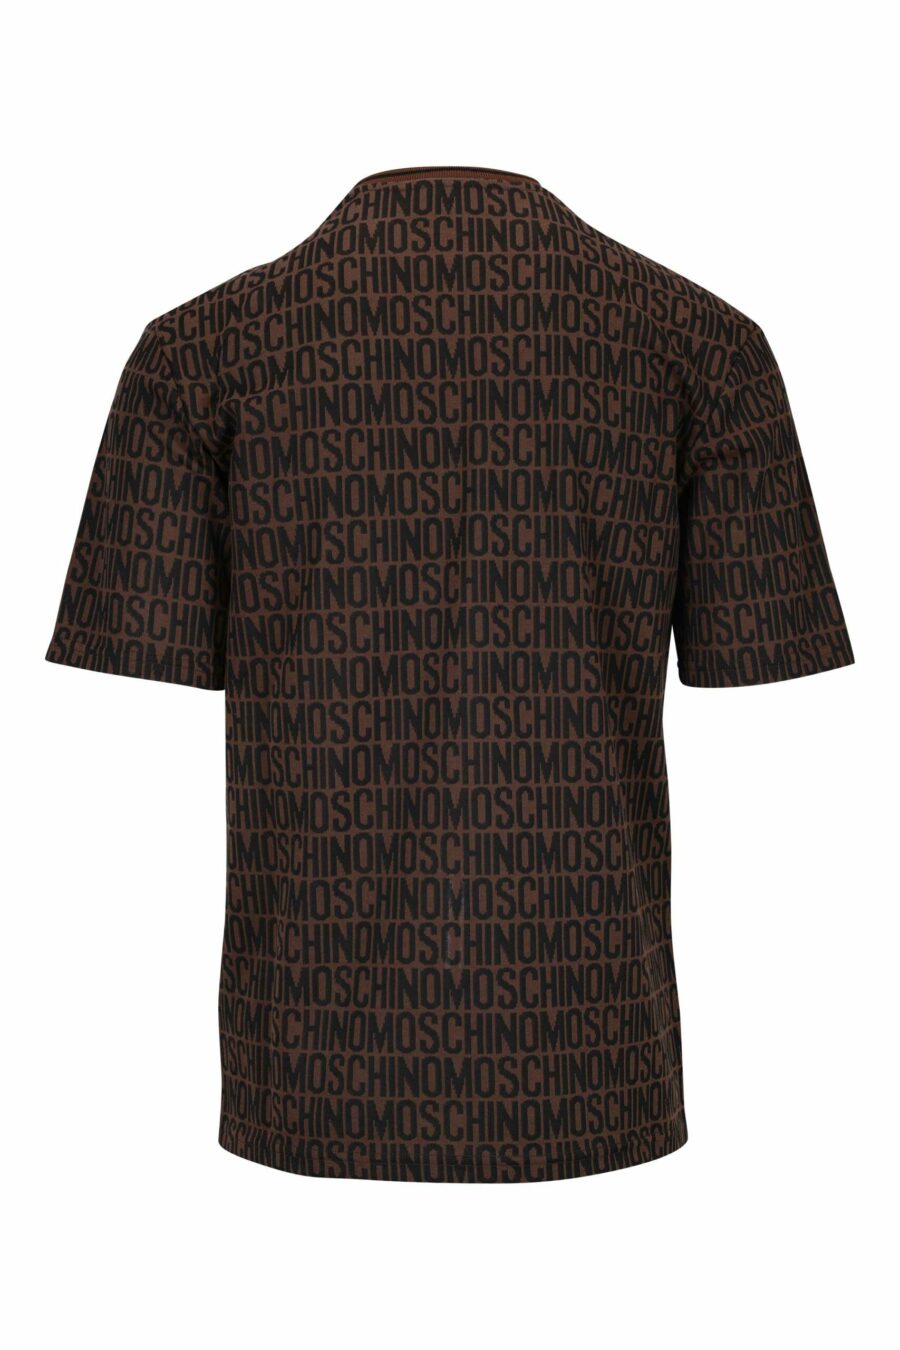 Braunes T-Shirt mit klassischem "all over logo" - 667113465227 1 skaliert